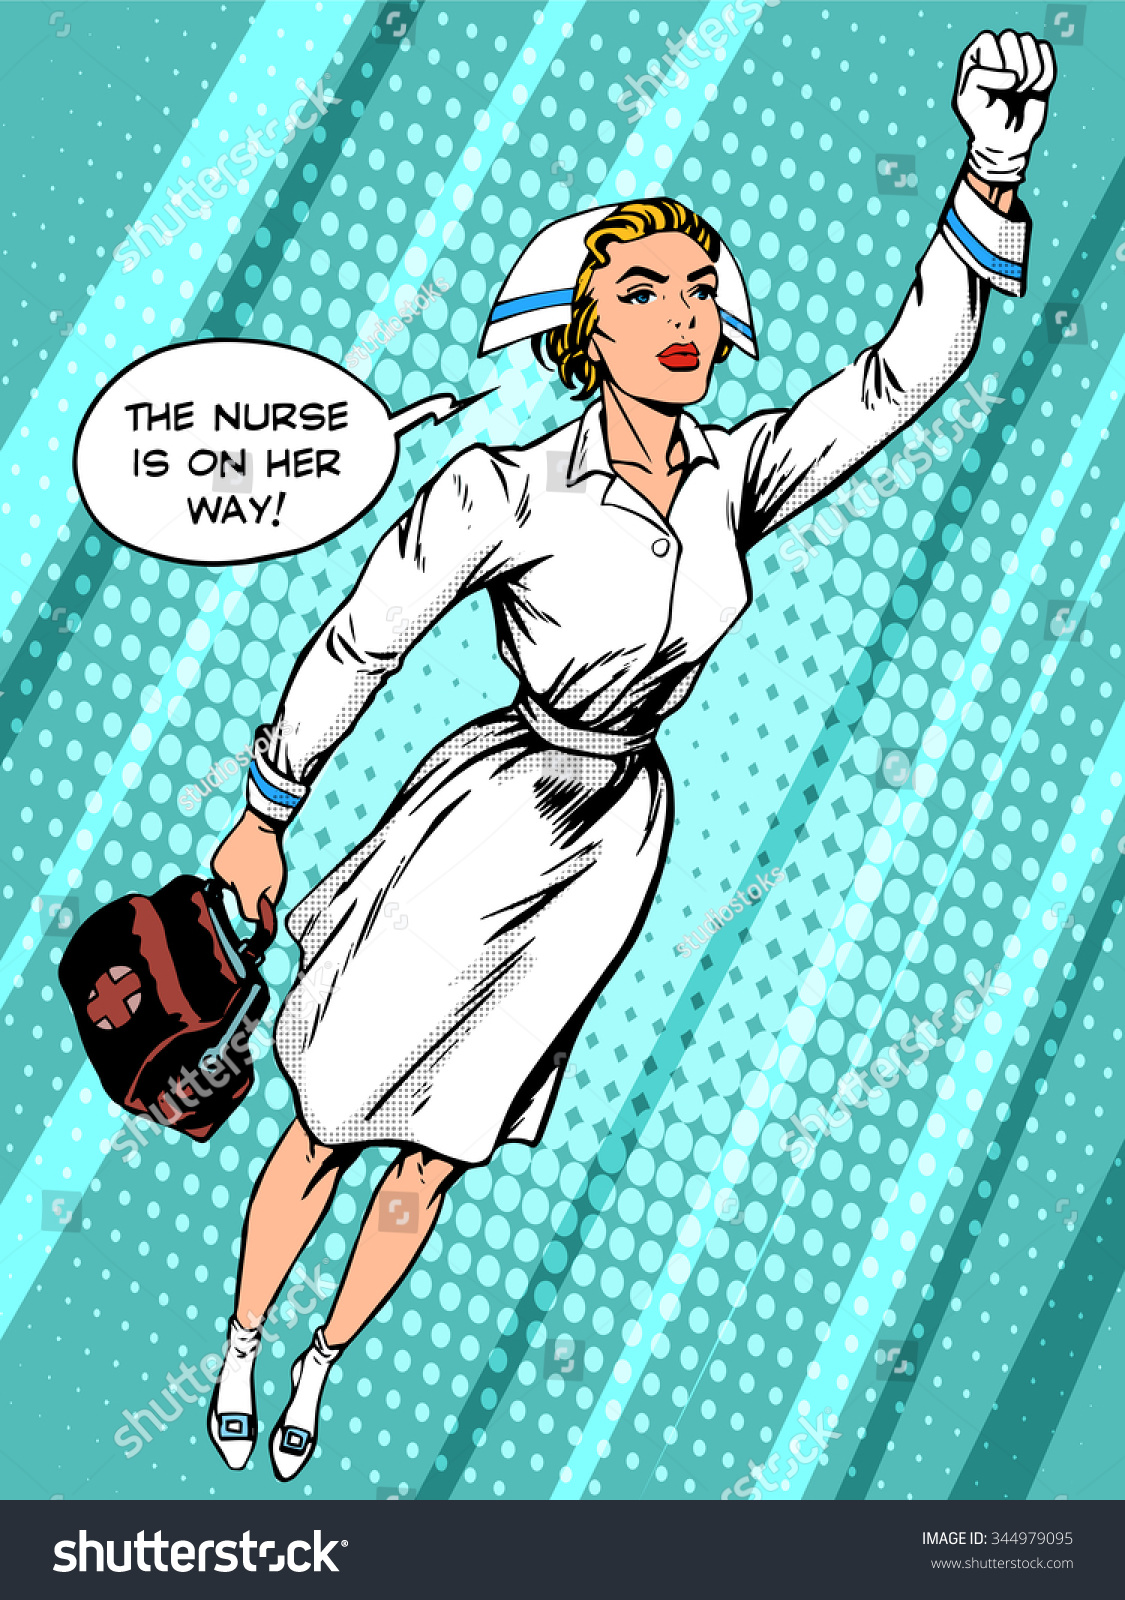 Super Hero Nurse Flies Rescue Pop: стоковая векторная графика (без лицензио...